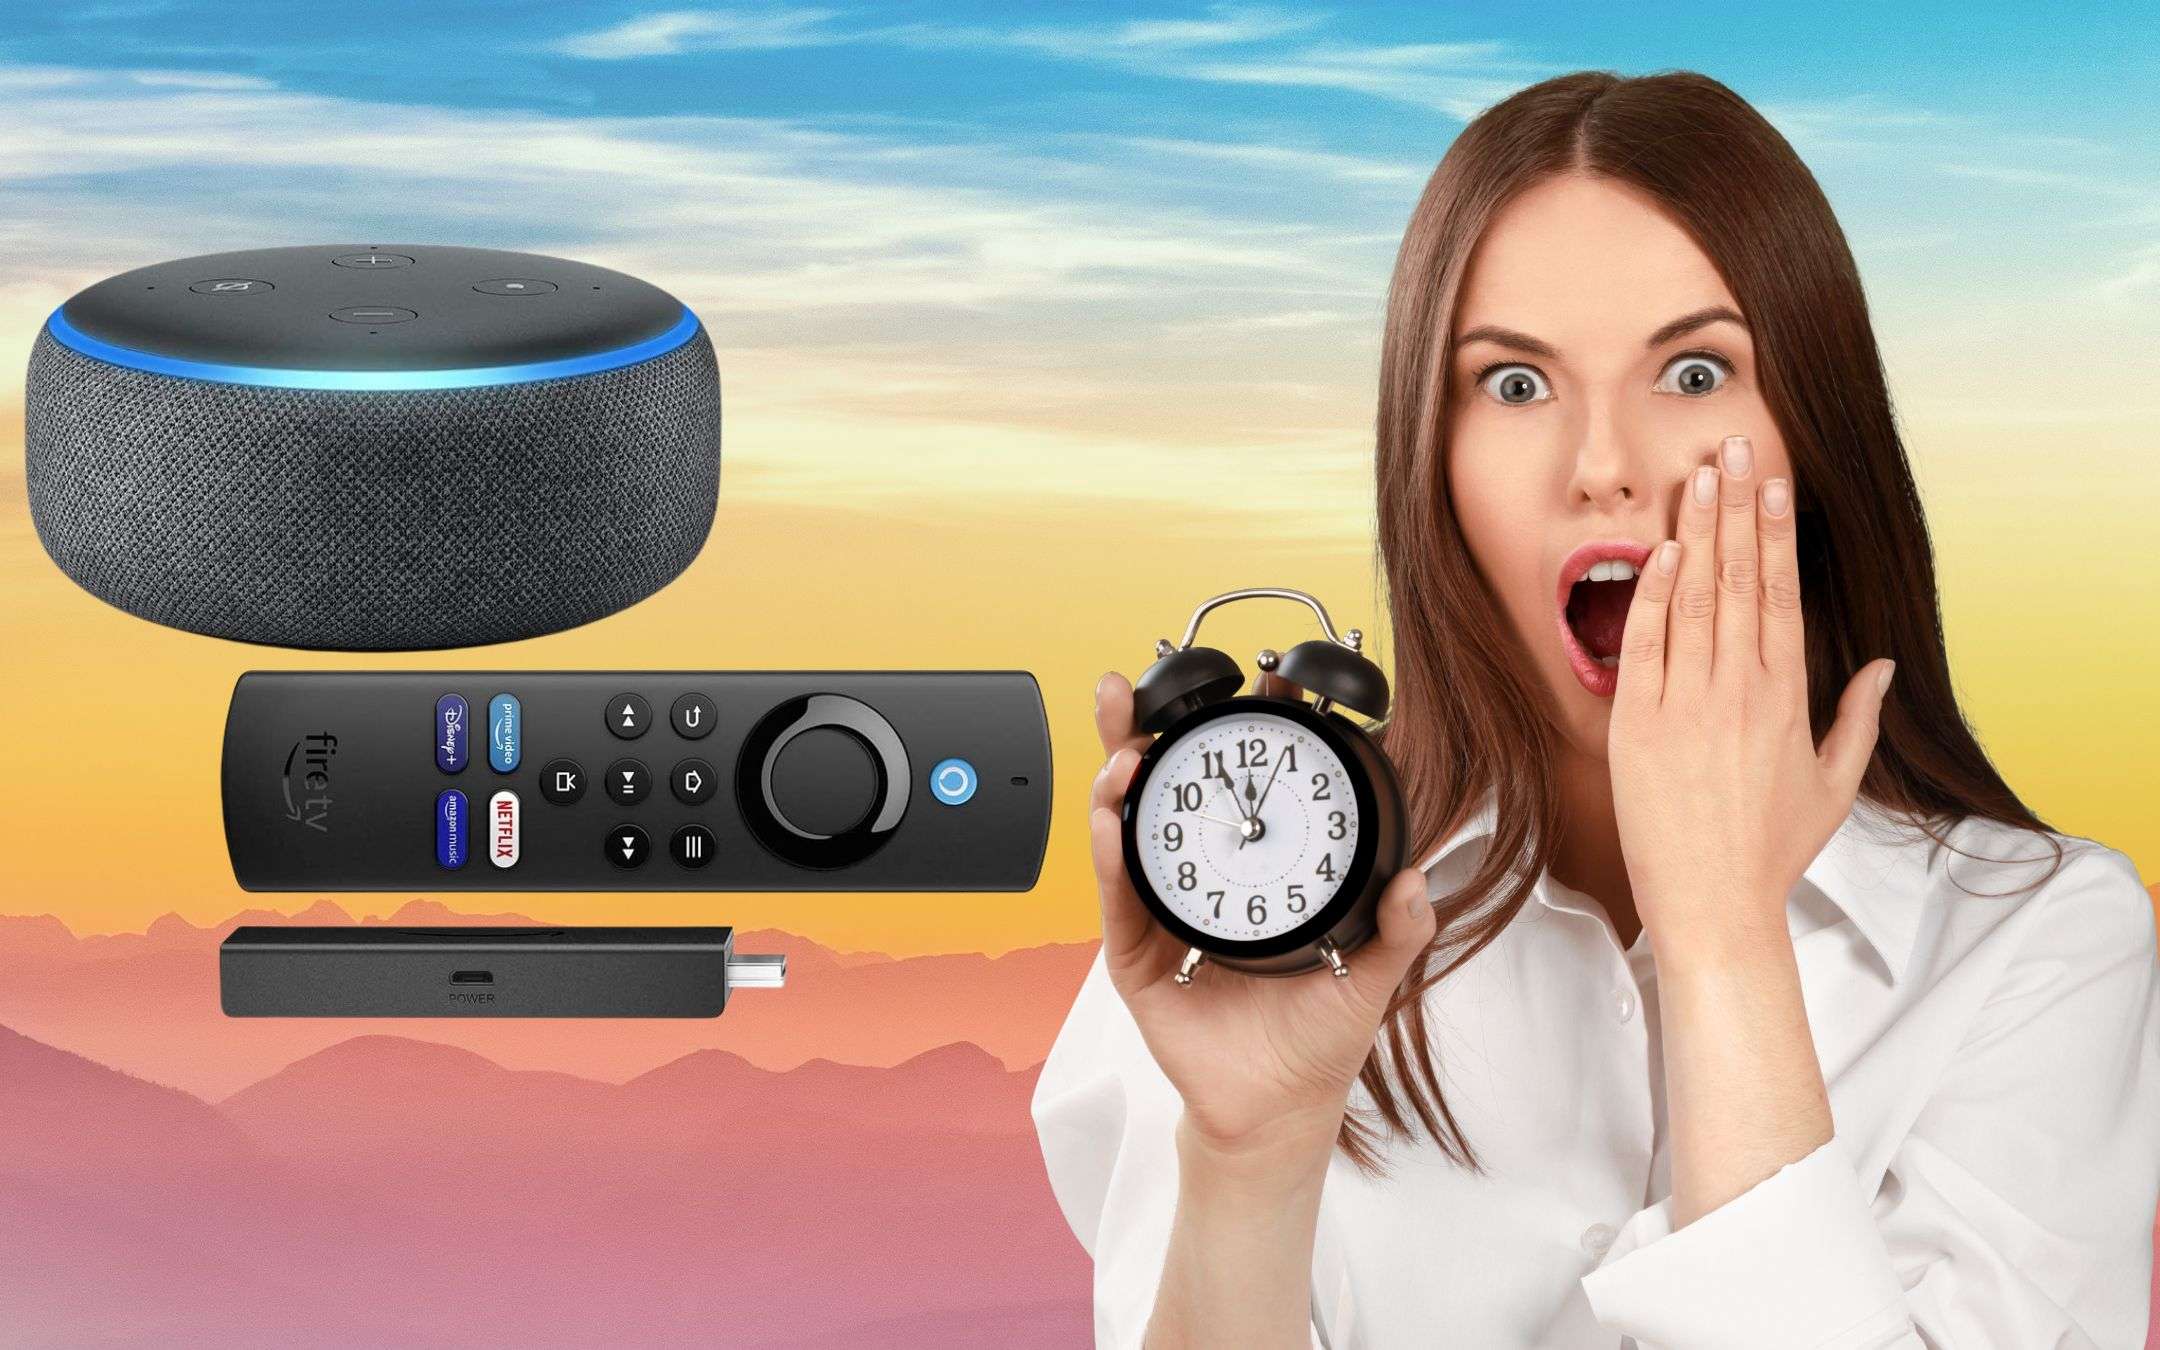 Smart TV e smart speaker Amazon a 19,99€: ULTIMO GIORNO per averli